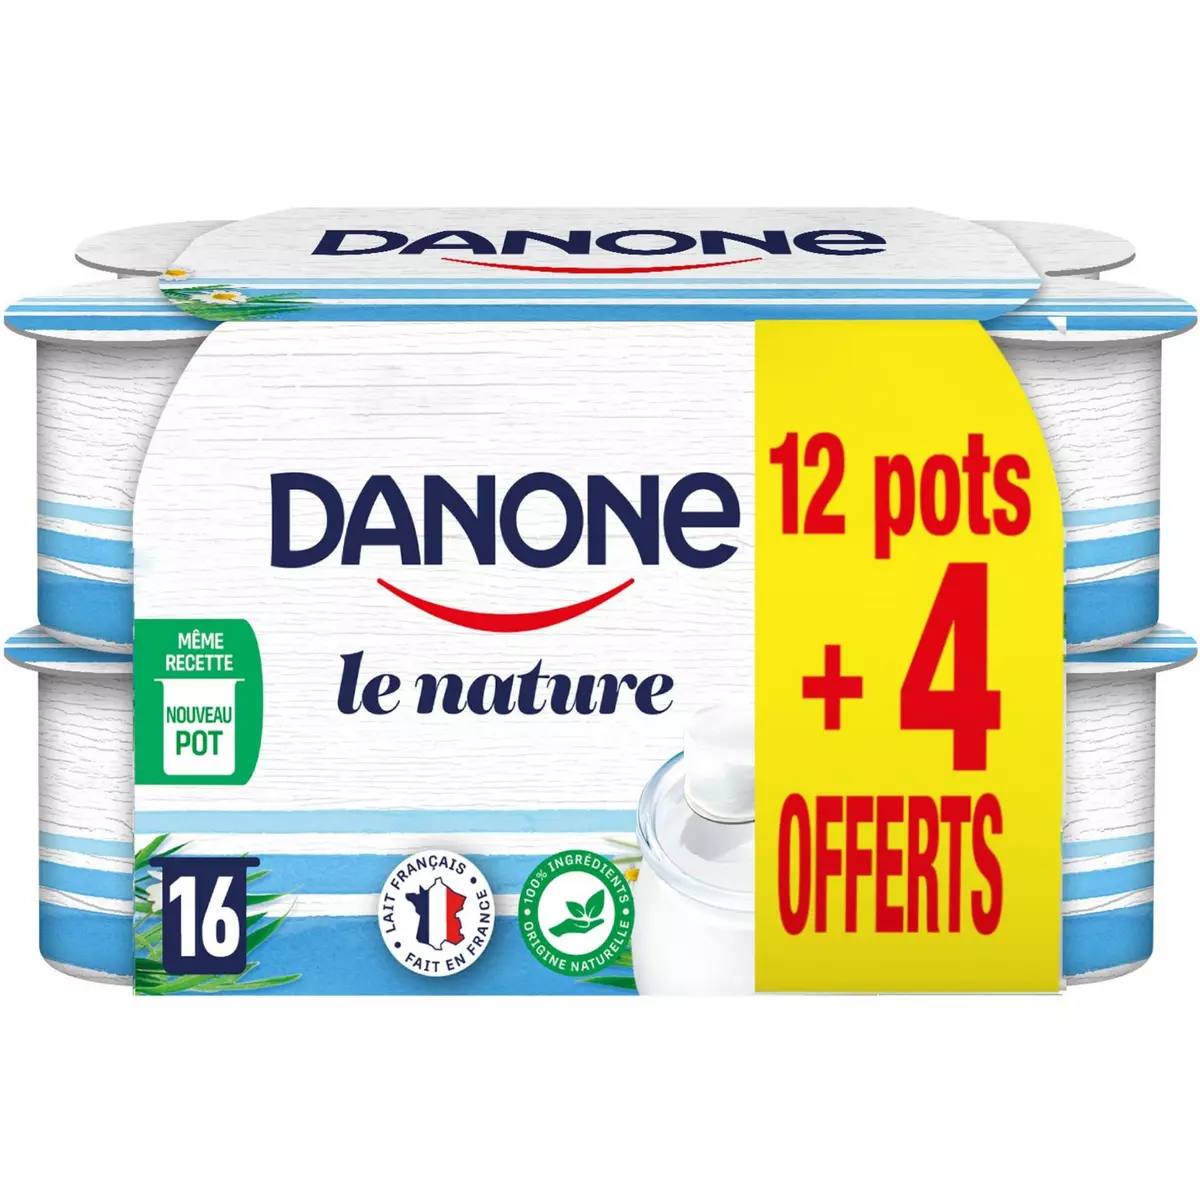 DANONE Yaourt nature 12+4 offerts 16x125g